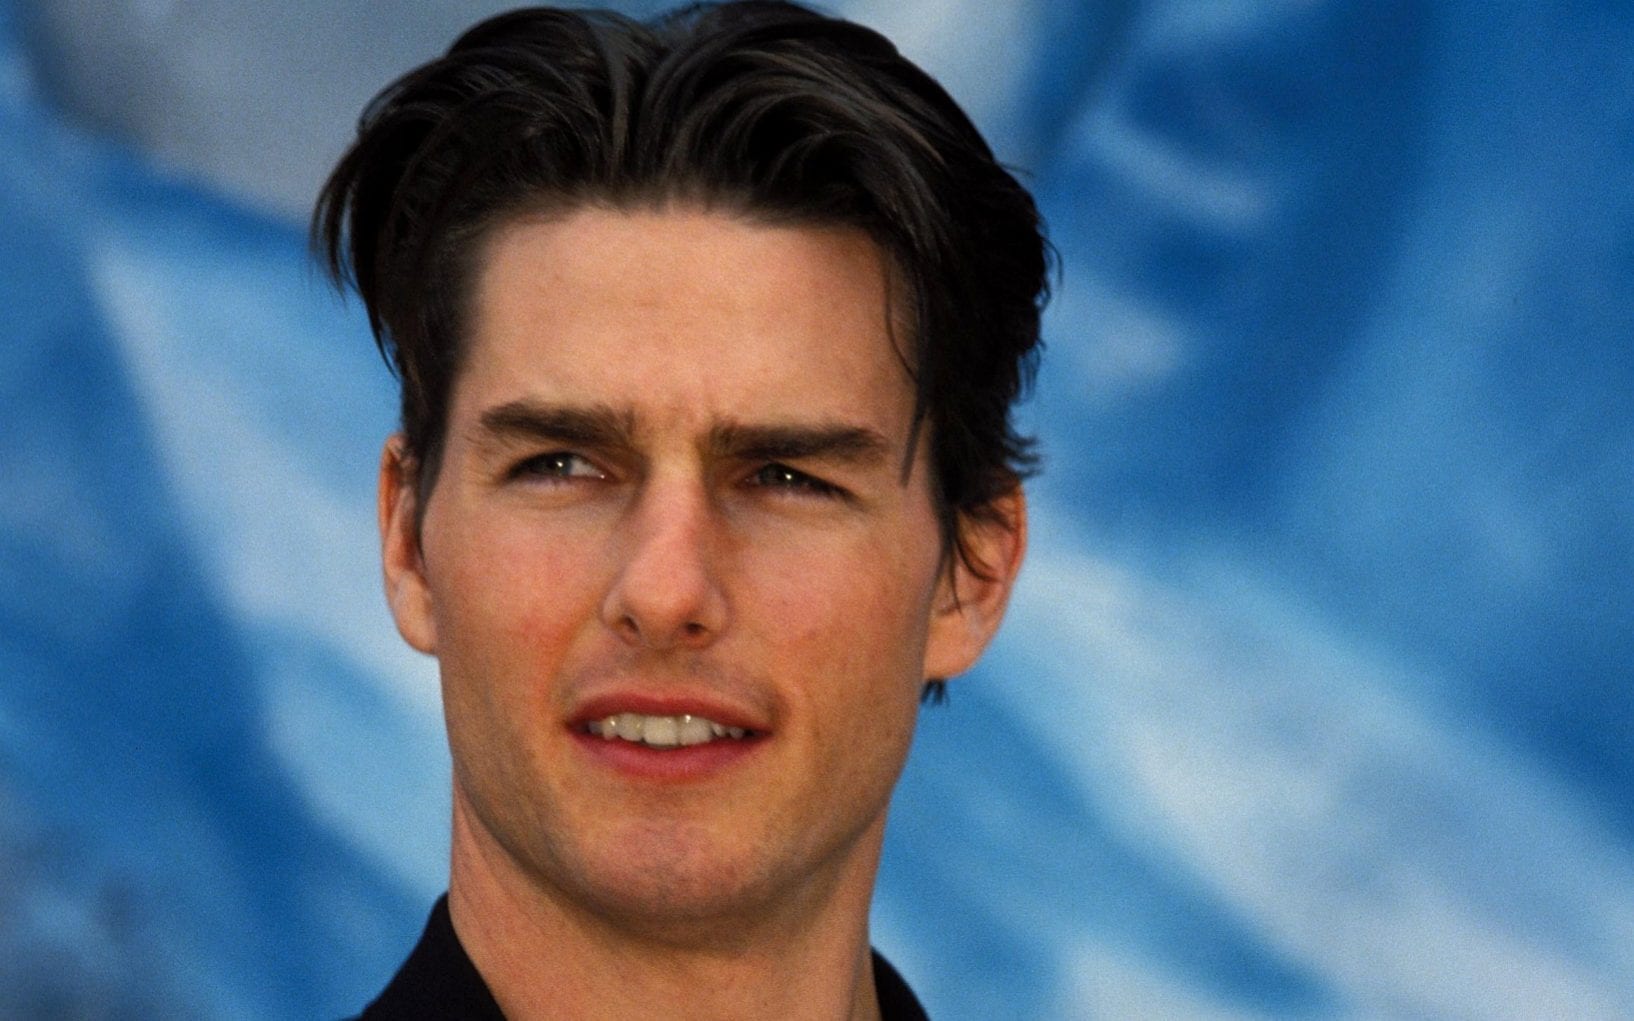 Un nou cuplu s-a format la Hollywood! Tom Cruise este din nou îndrăgostit de o femeie mai tânără